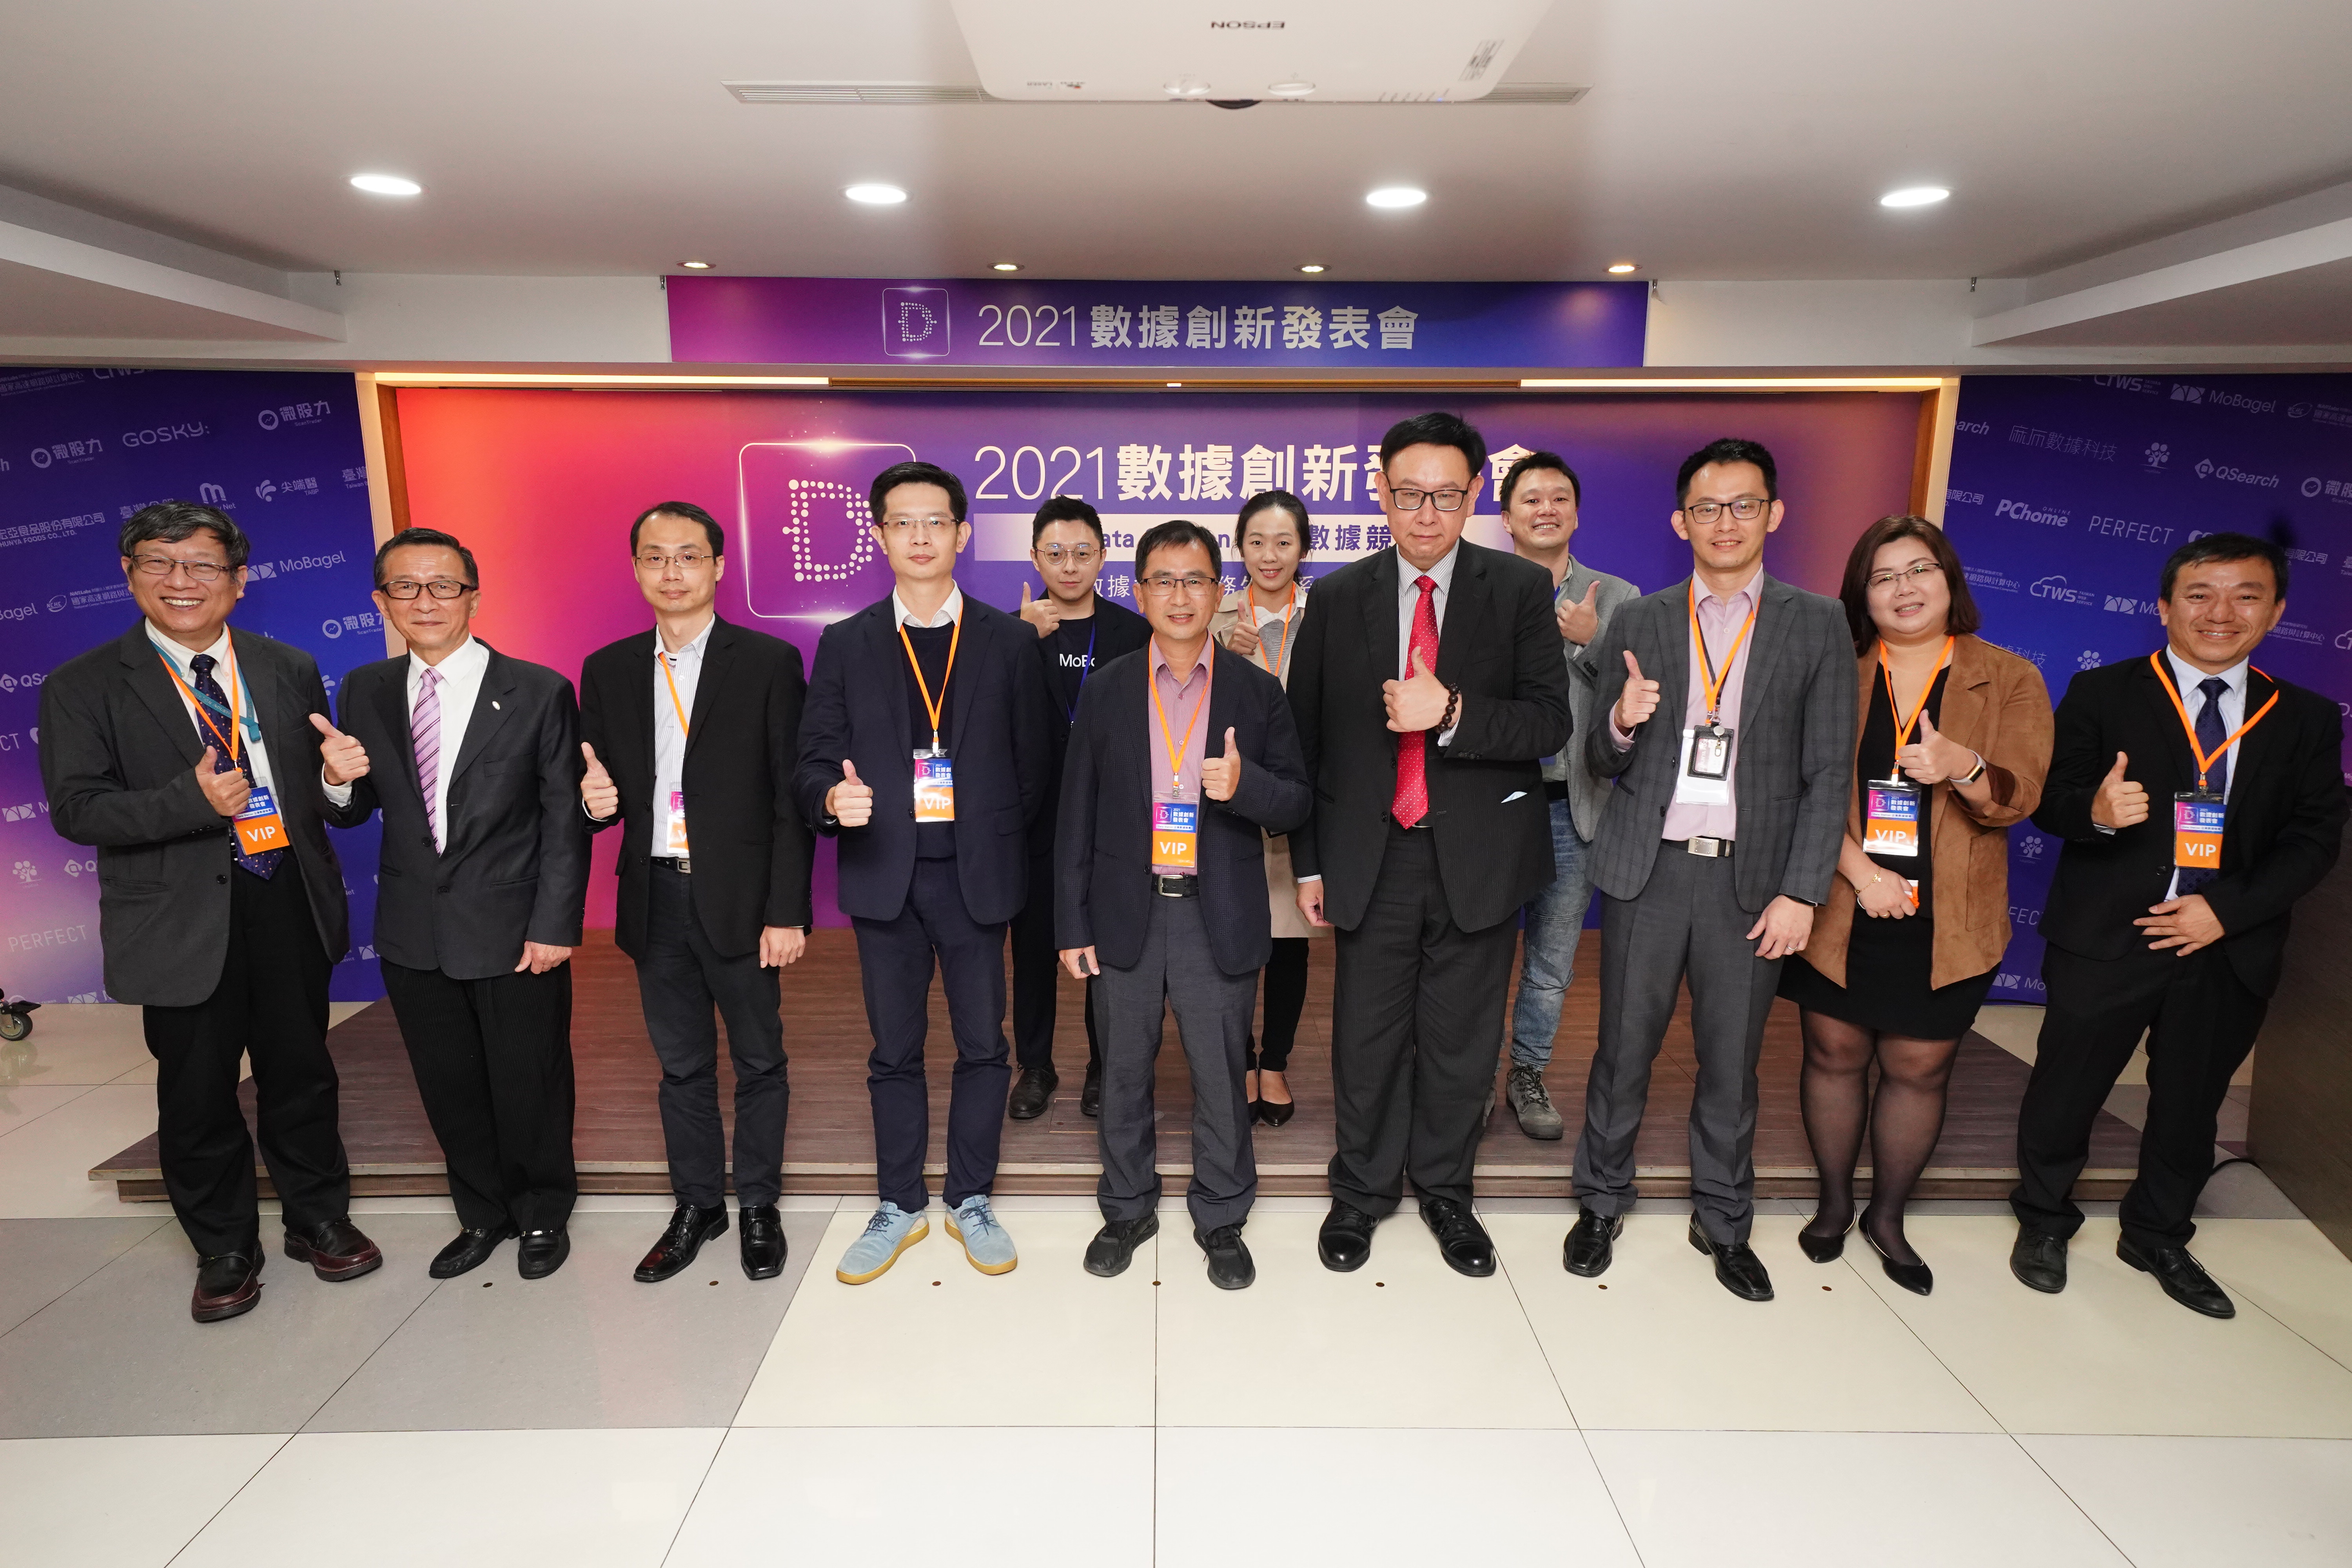 國網中心 王泰期副研究員（後排右一）參加2021數位創新發表會閉幕。